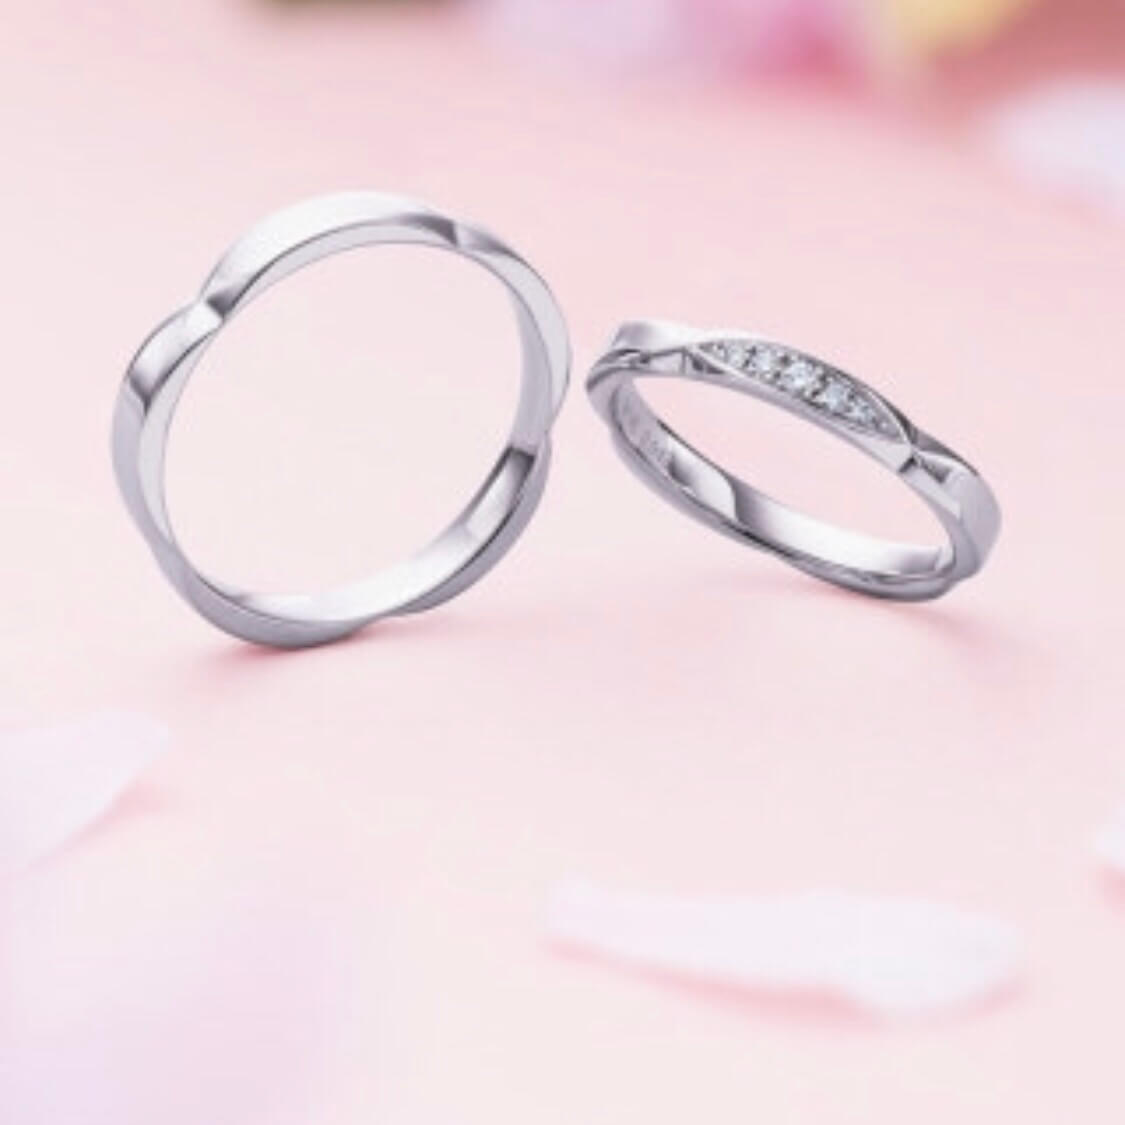 フラージャコー 鍛造結婚指輪 サクラ